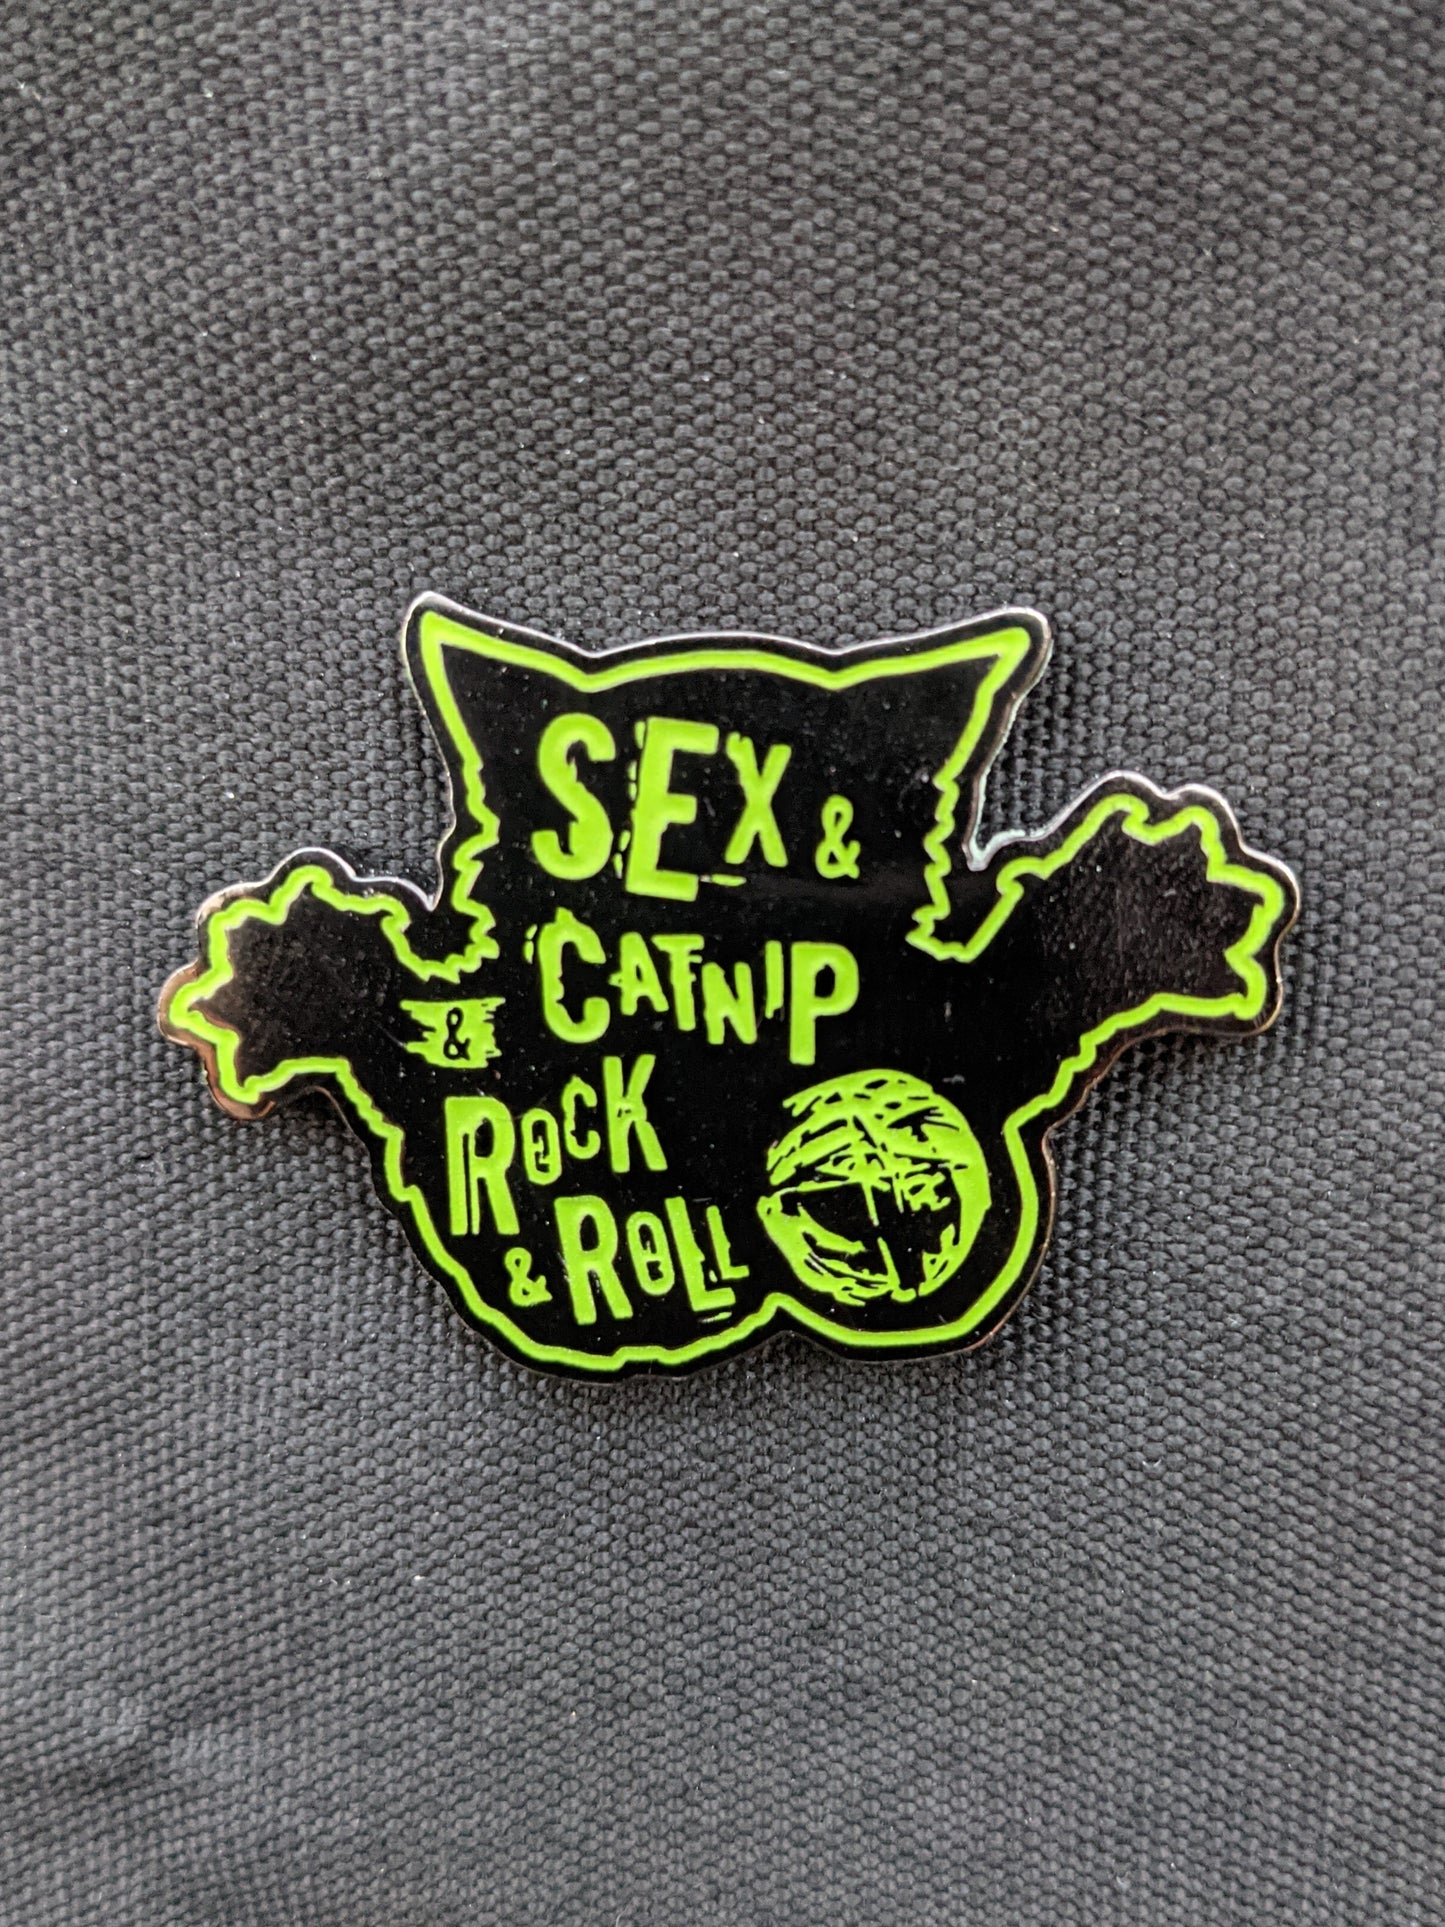 Sex & Catnip & Rock & Roll enamel pin